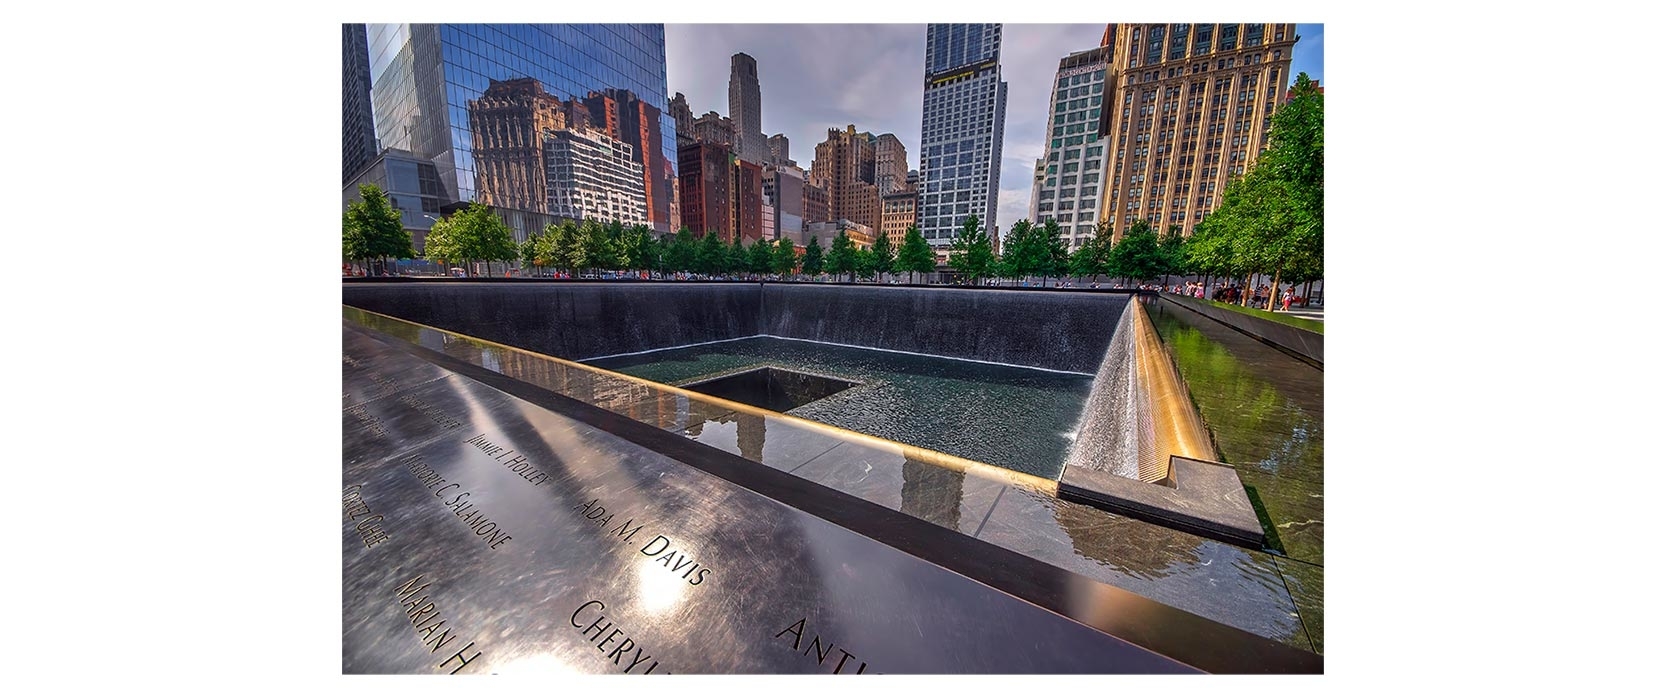  9/11 memorial world trade center site